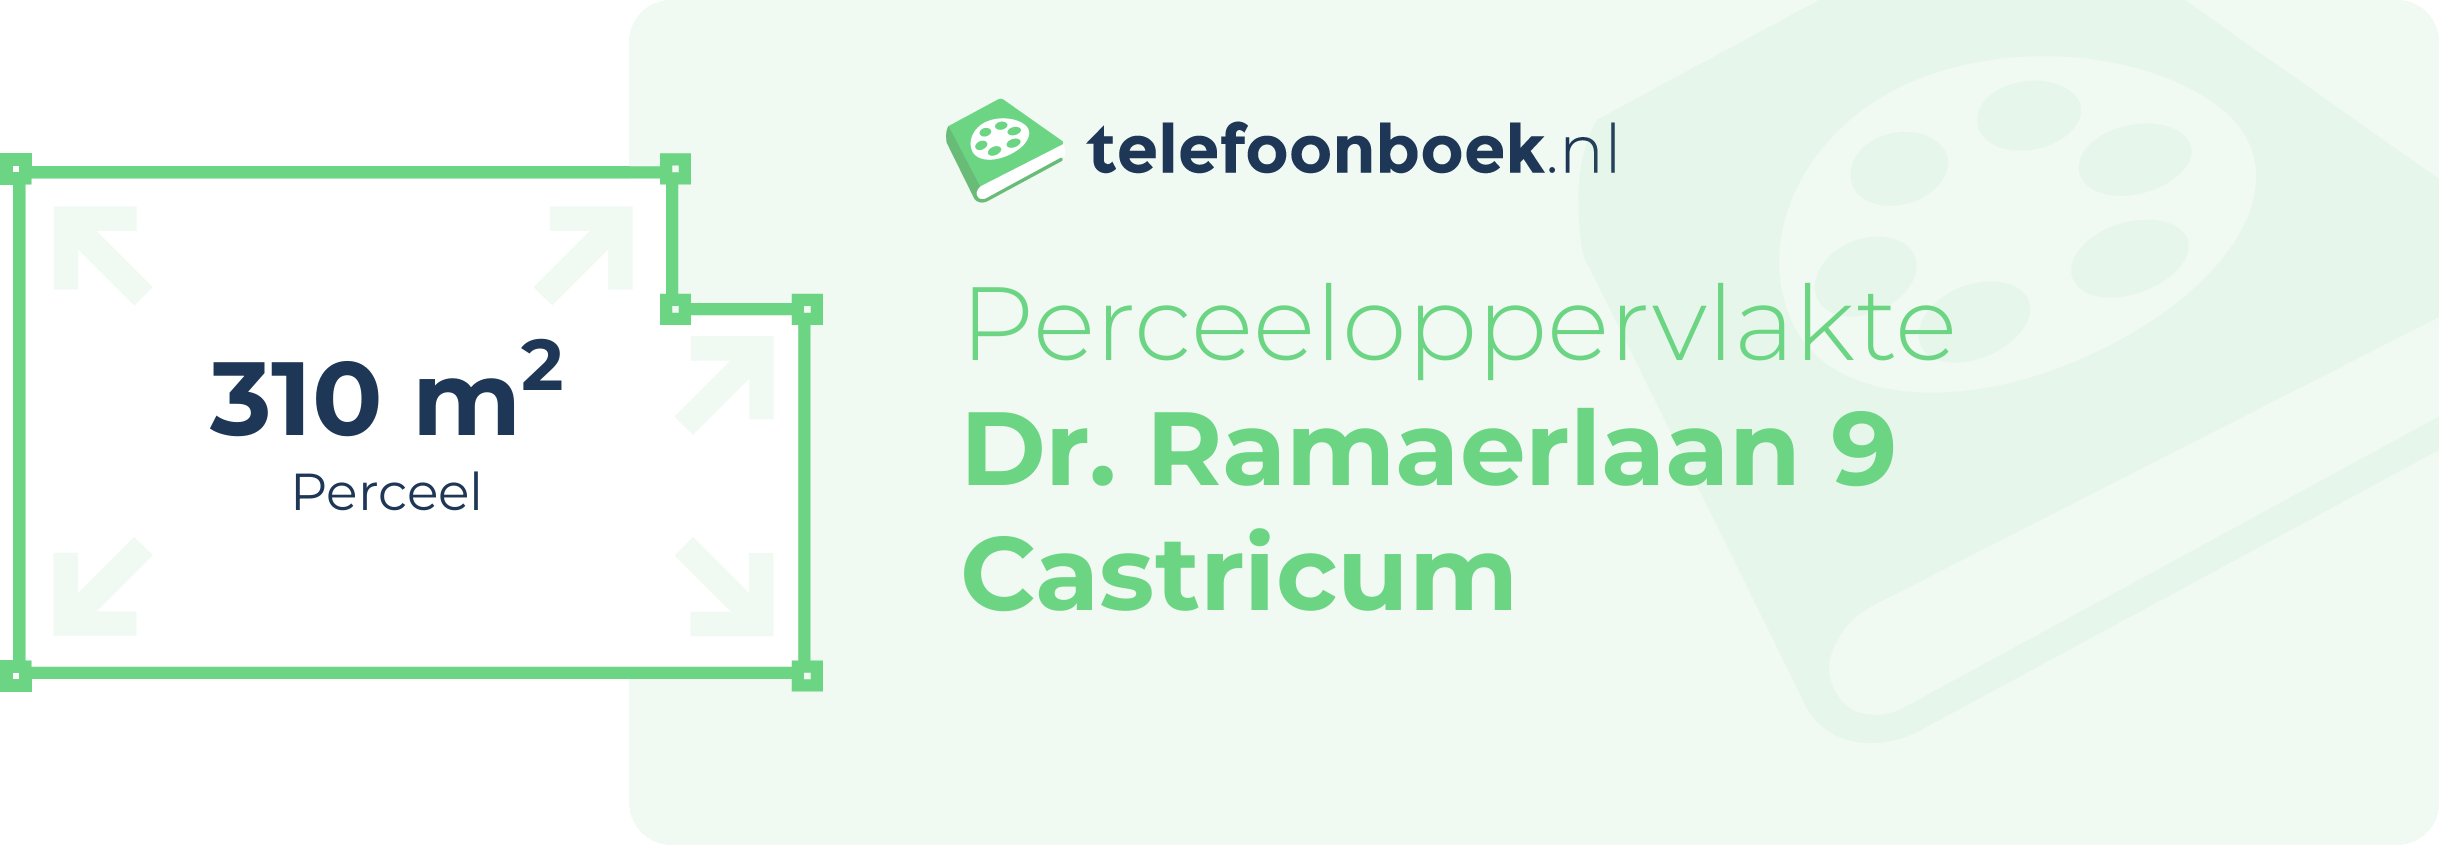 Perceeloppervlakte Dr. Ramaerlaan 9 Castricum